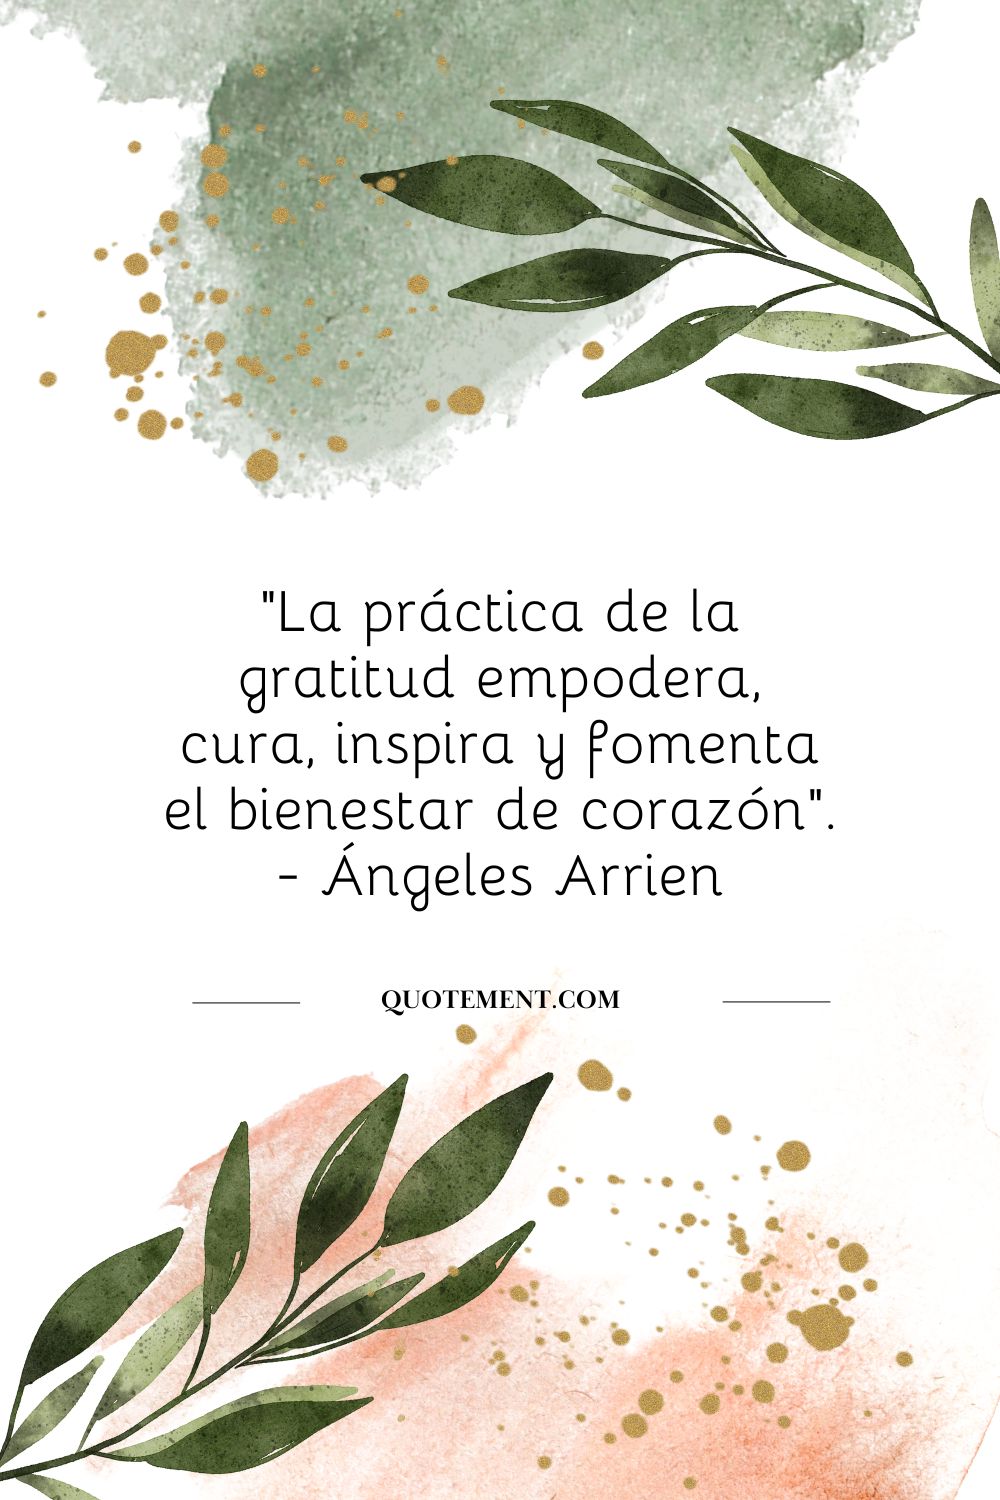 "La práctica de la gratitud empodera, sana, inspira y fomenta el bienestar del corazón". - Ángeles Arrien